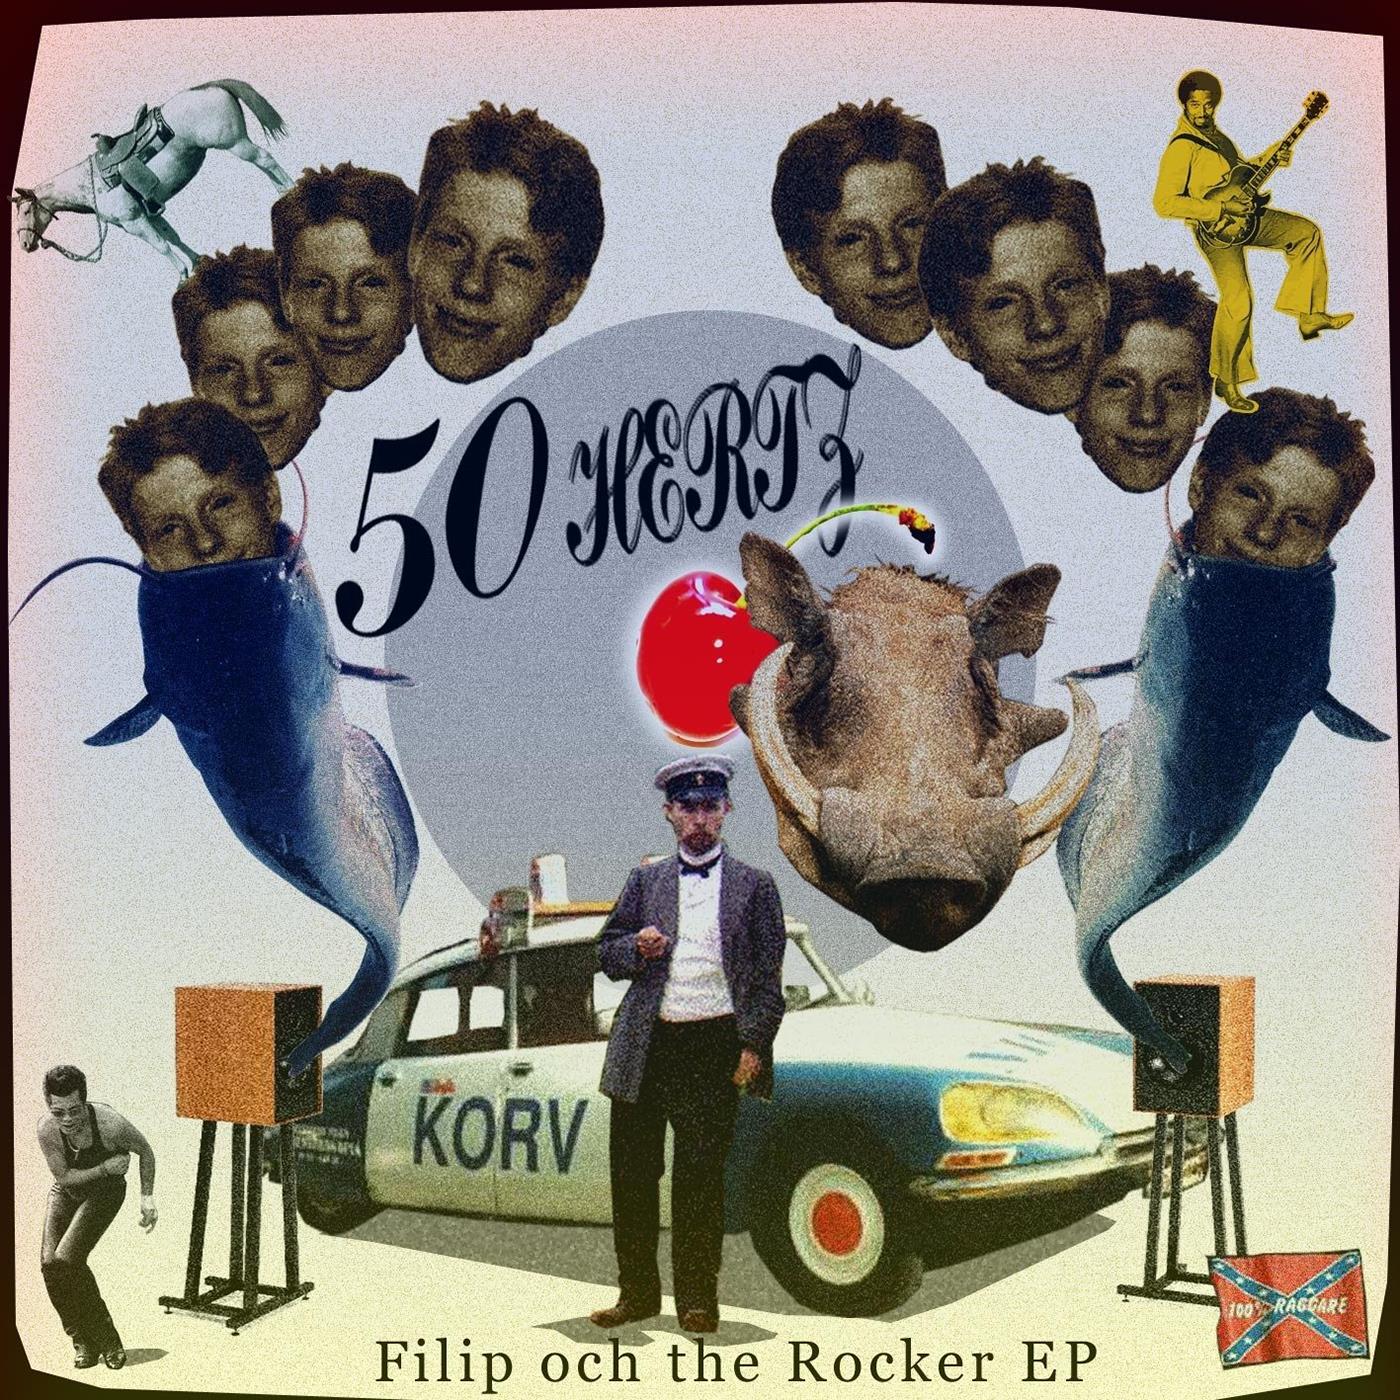 Filip och the Rocker EP